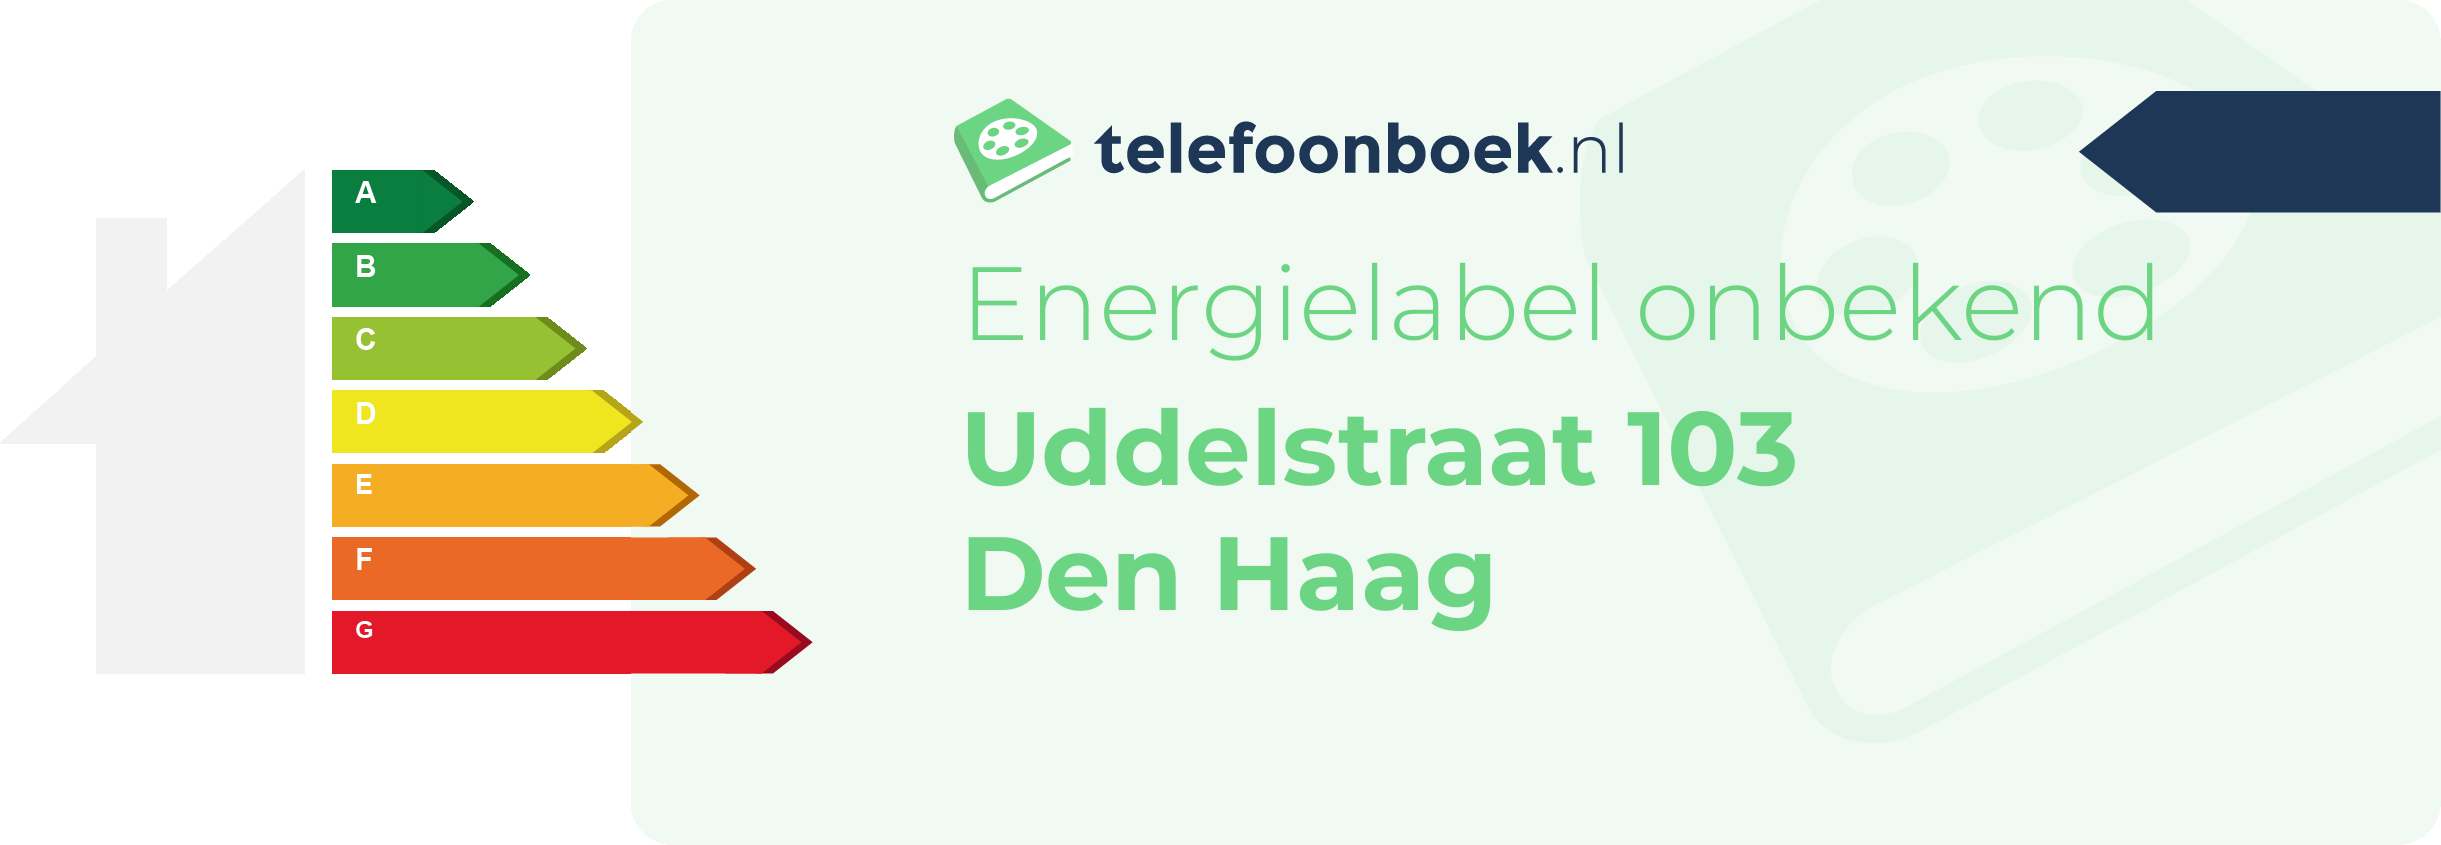 Energielabel Uddelstraat 103 Den Haag